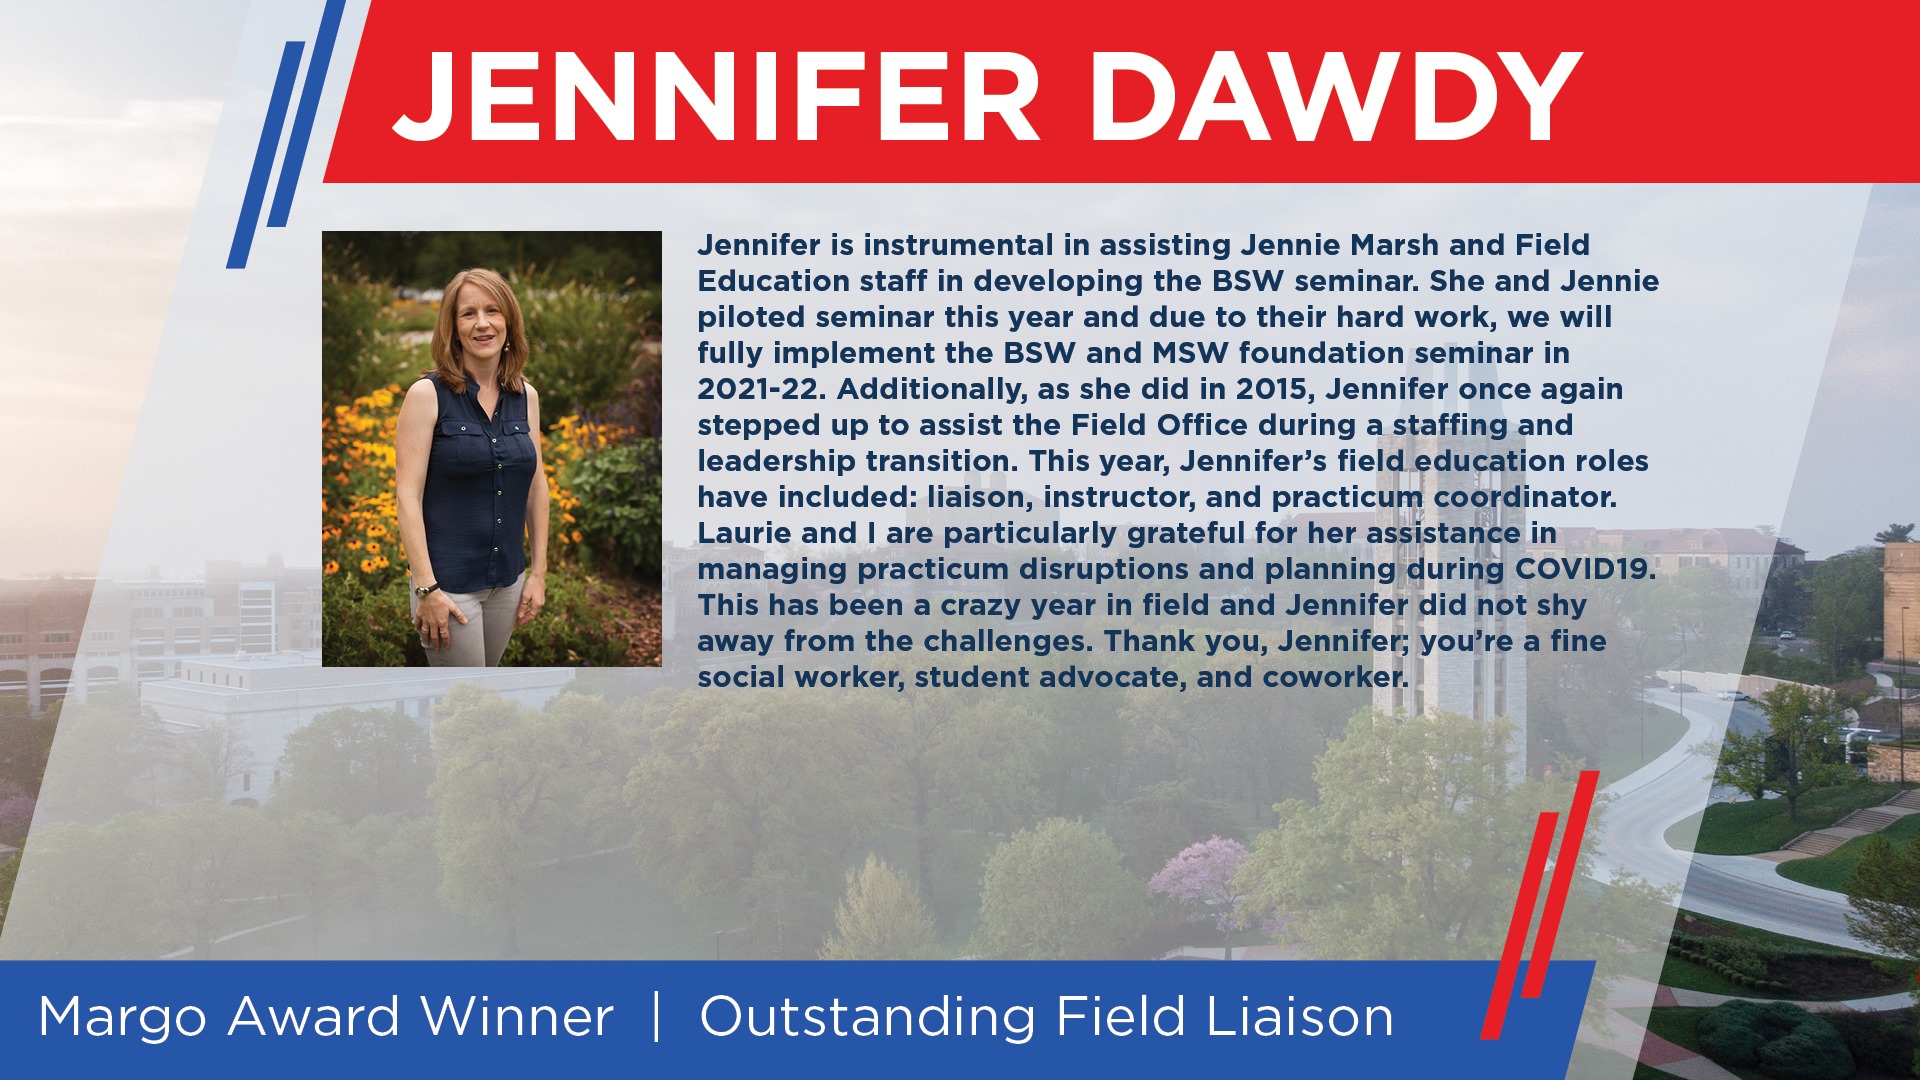 Outstanding Field Liaison Margo Award Winner - Jennifer Dawdy